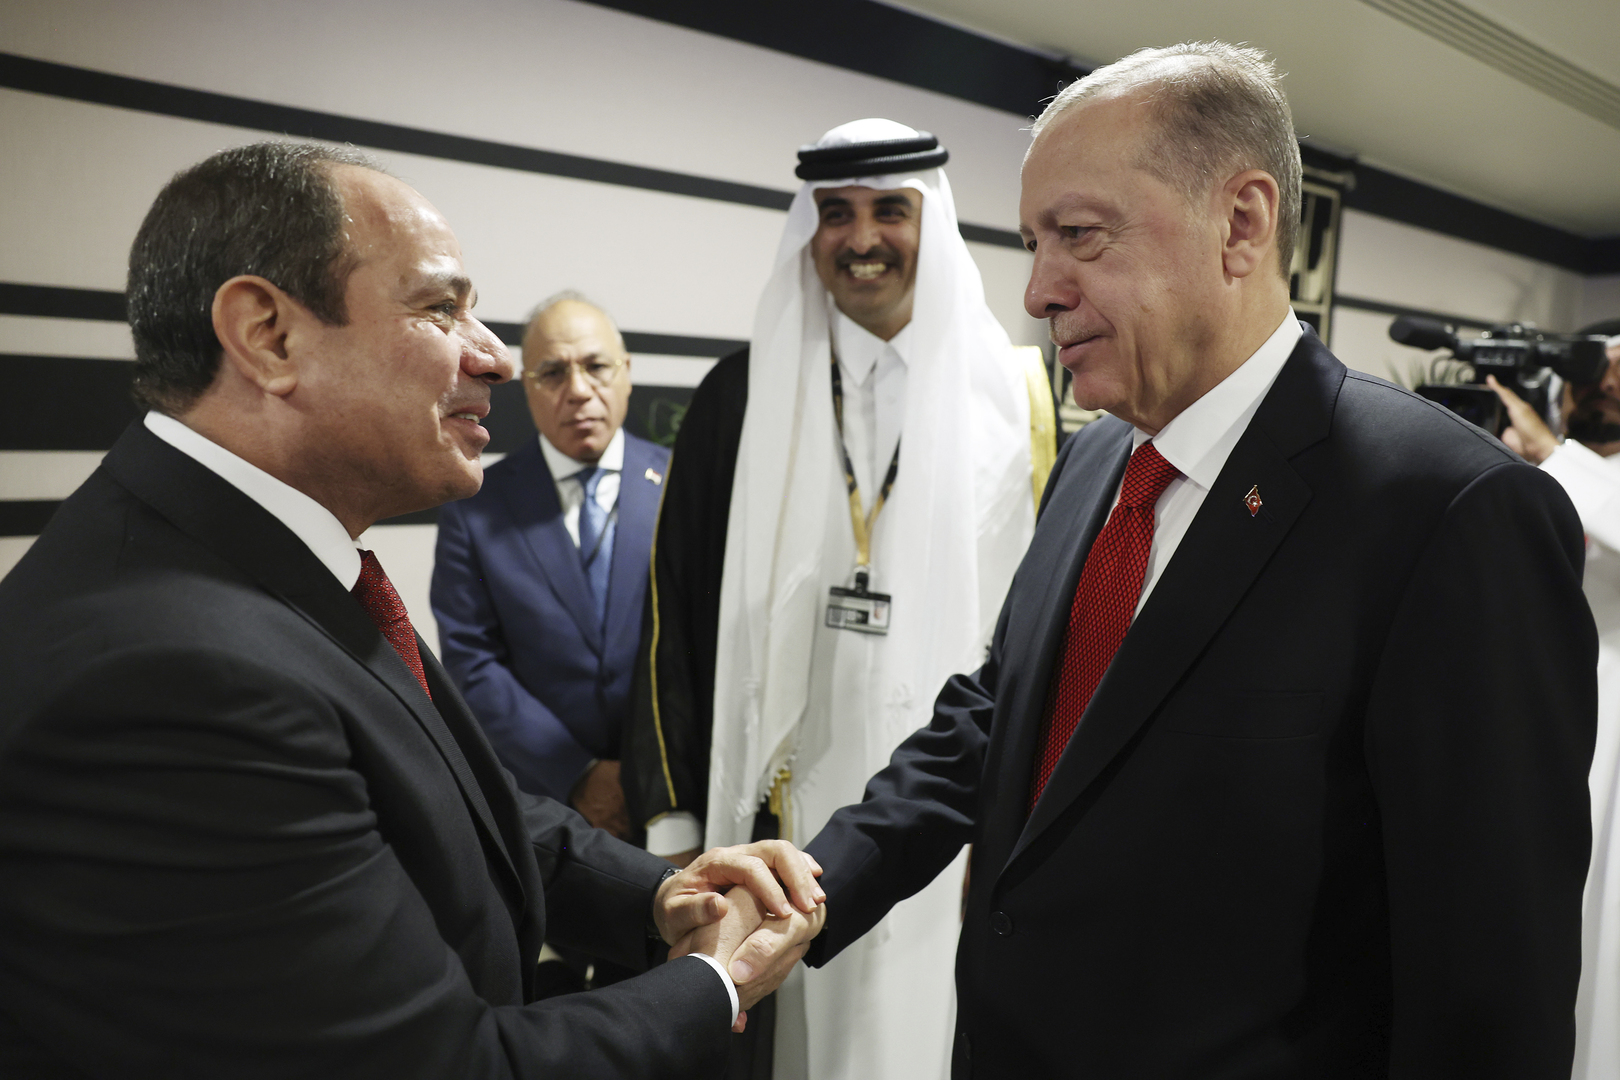 الرئاسة المصرية: السيسي وأردوغان يقرران في اتصال البدء فورا برفع العلاقات الدبلوماسية وتبادل السفراء